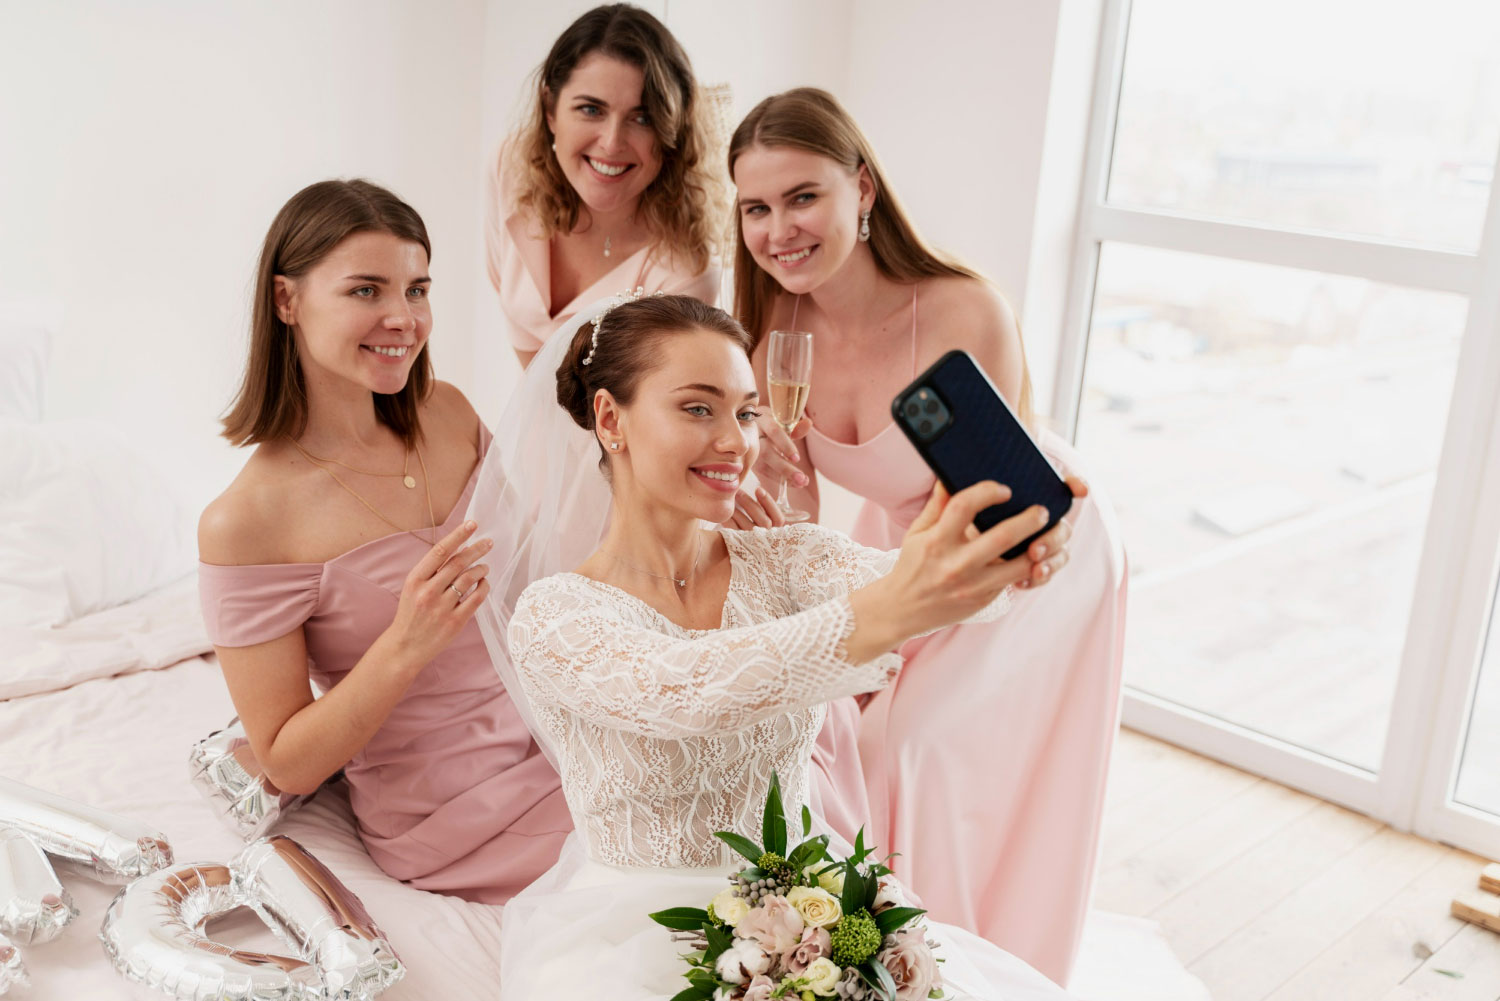 Bridal Commerce | Social Media